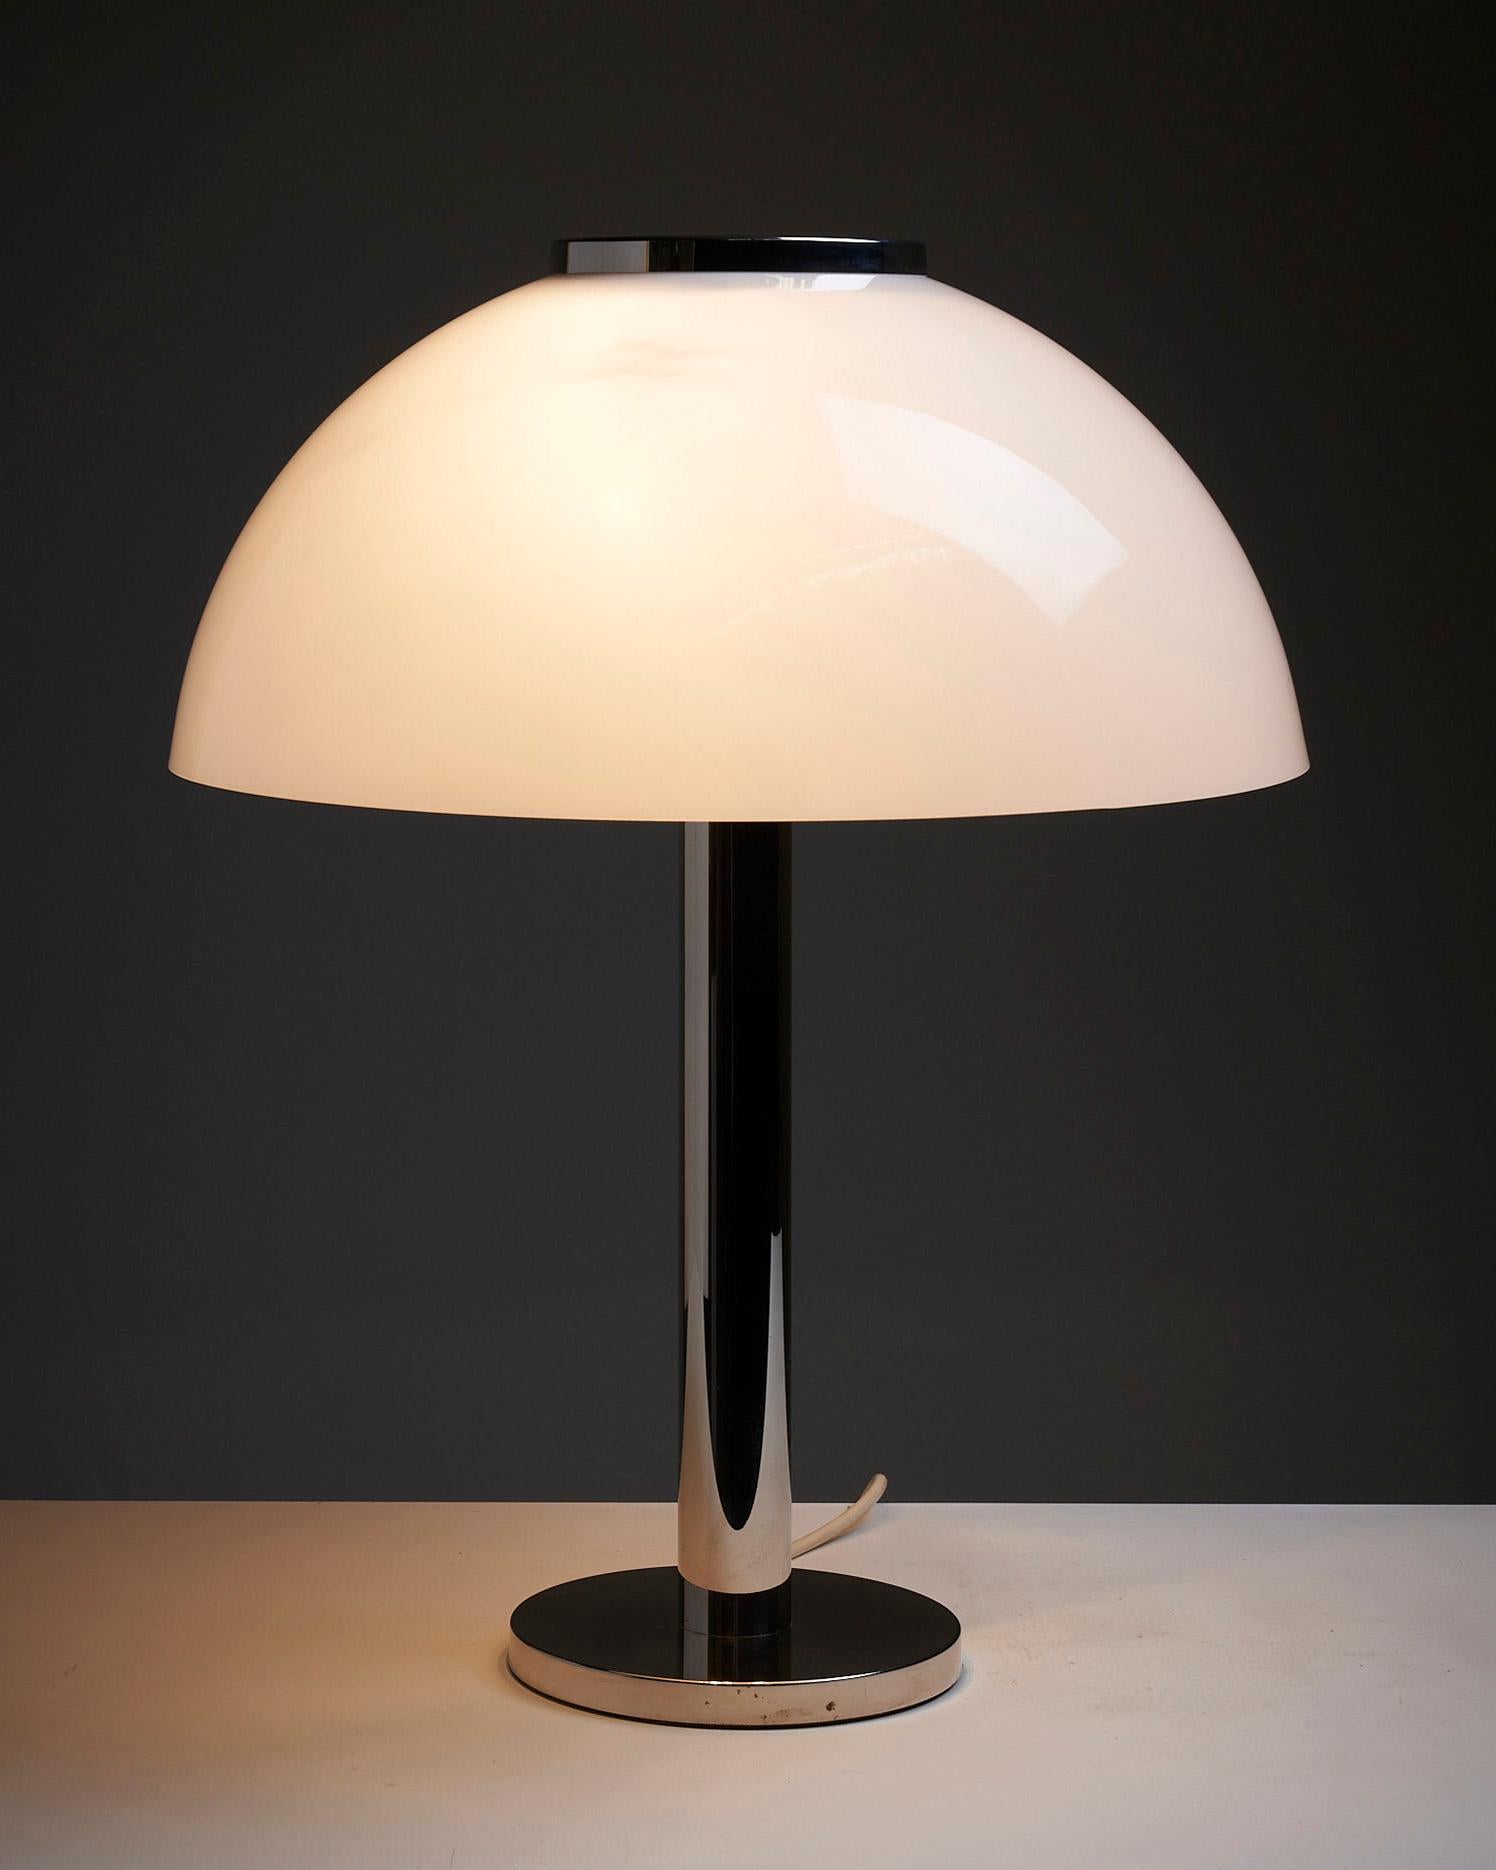 Ilumina tu espacio con la elegante lámpara de mesa Dome de Beisl Leuchten. Esta lámpara de diseño alemán combina una base y un vástago cromados relucientes, que desprenden un toque de sofisticación y elegancia moderna.

En la parte superior del